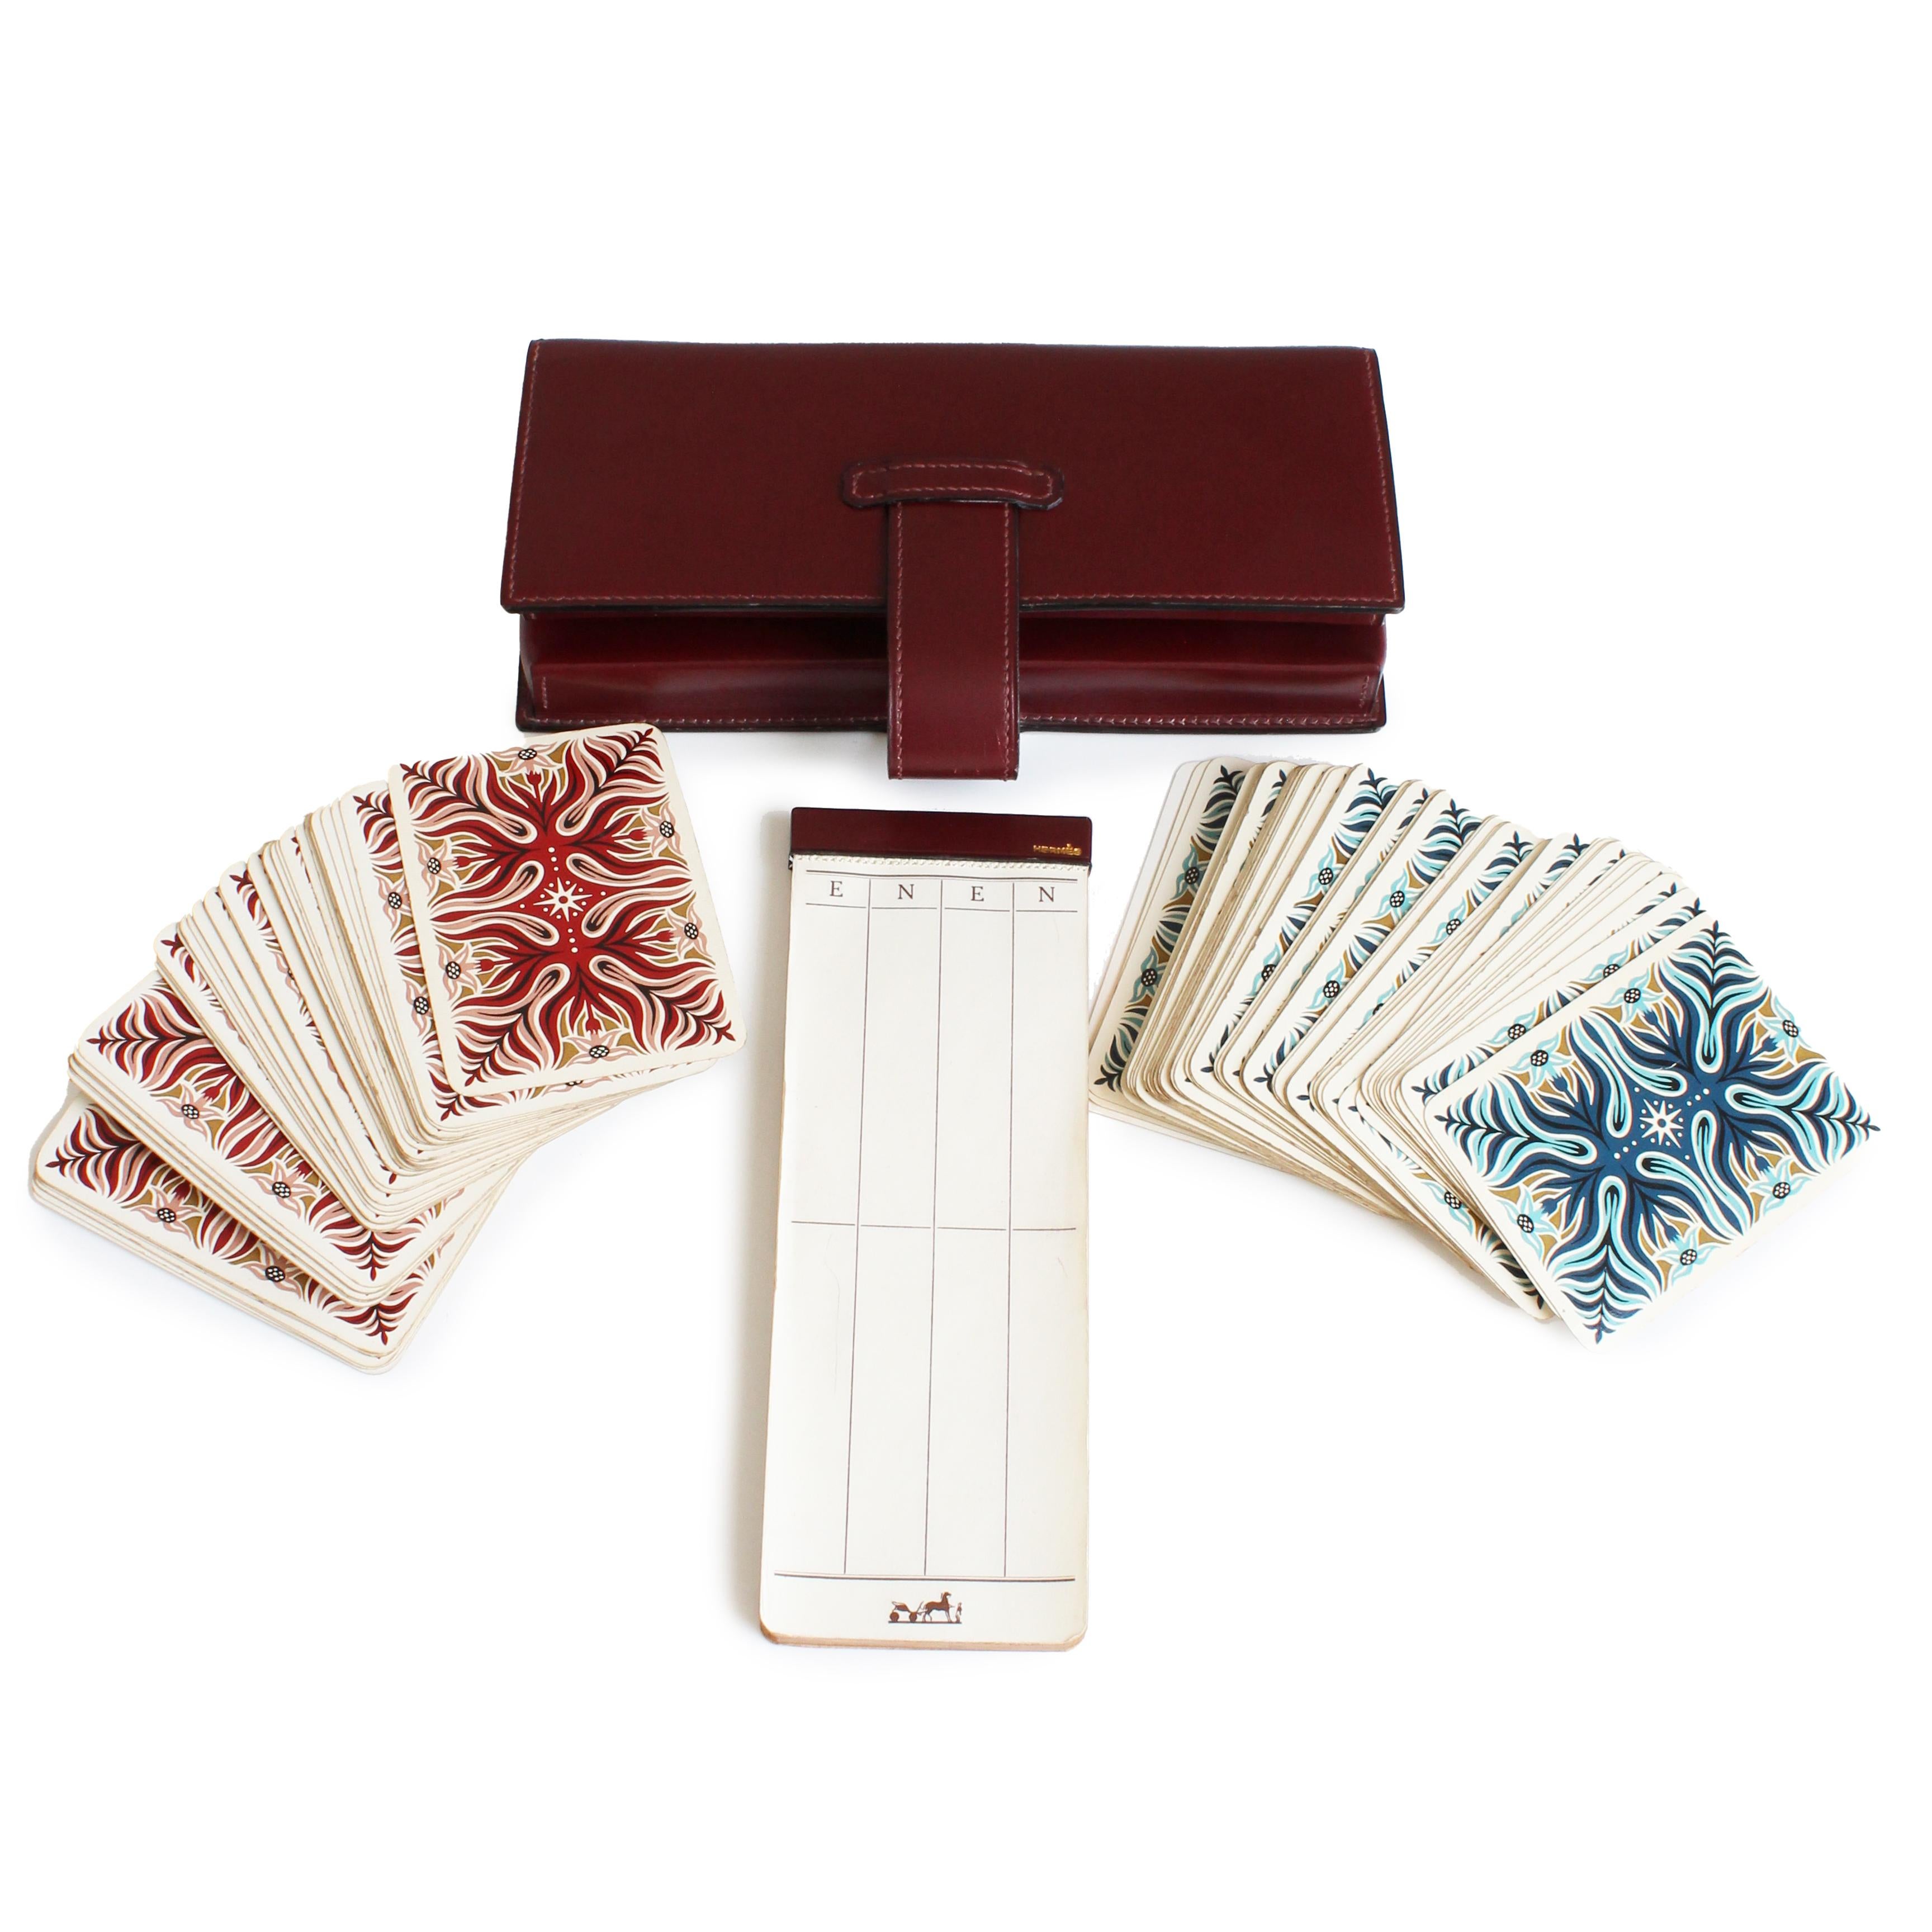 Gebrauchtes, altes Hermes Leder-Kartenspiel-Etui mit Spielstandskarte und Spielkarten, entworfen von AM Cassandre, wahrscheinlich Ende der 70er, Anfang der 80er Jahre hergestellt.  Sie ist aus burgunderfarbenem Boxleder gefertigt, wird mit einer